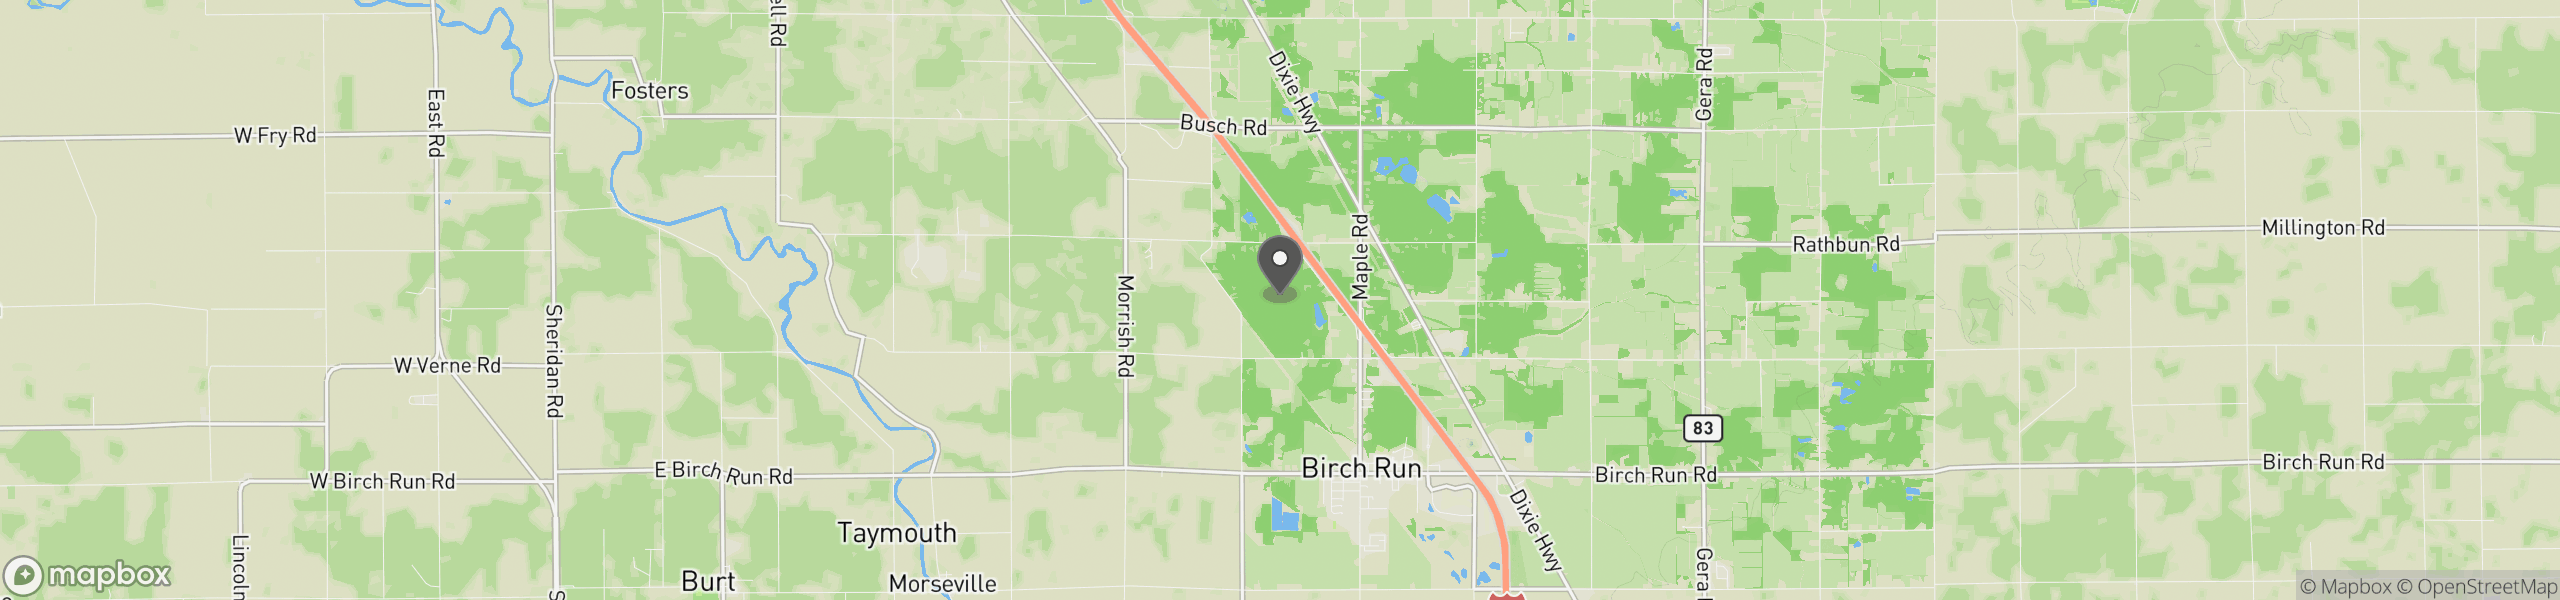 Birch Run, MI 48415